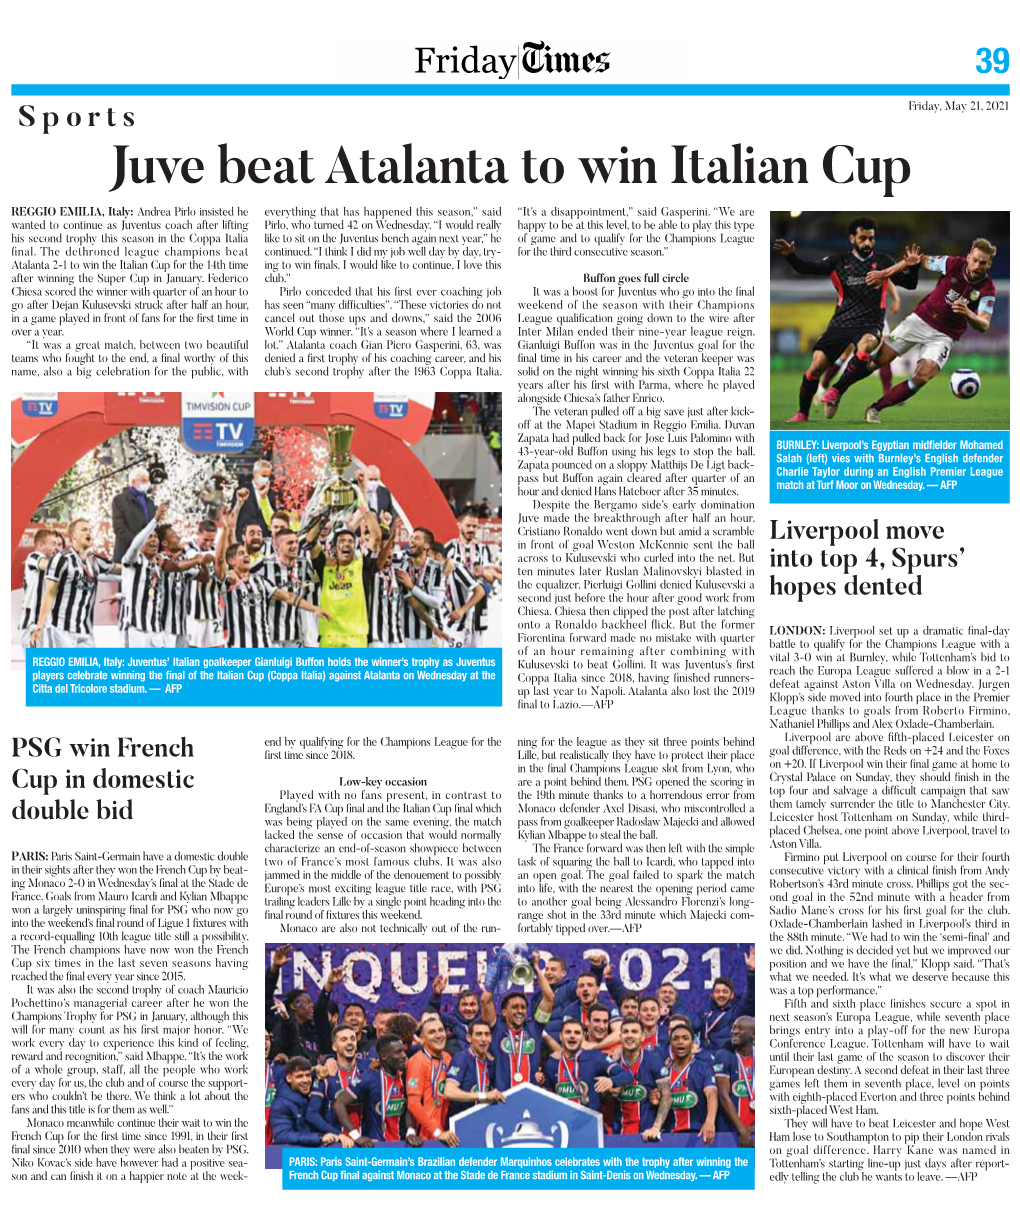 Juve Beat Atalanta to Win Italian